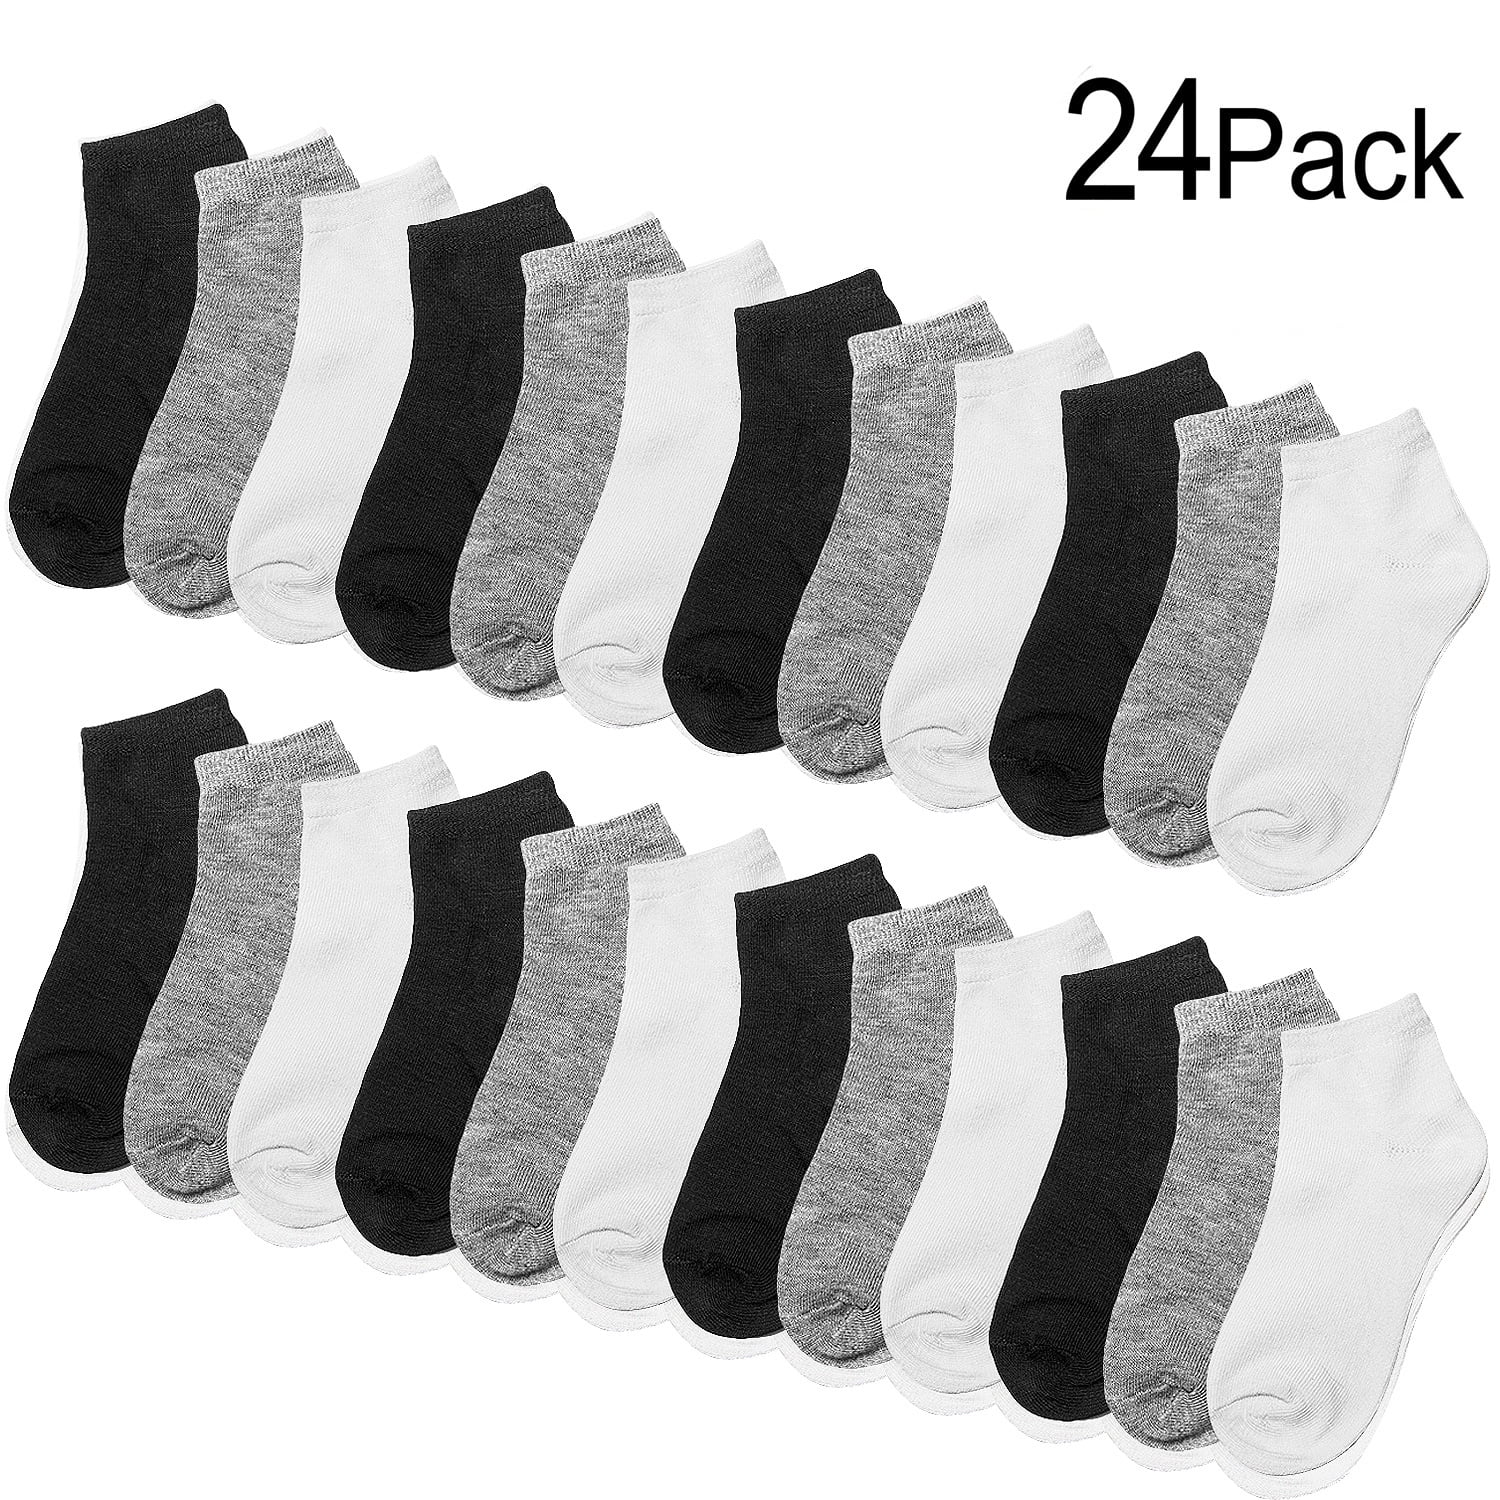 6/12 Pack Boys Girls Children's Kids Socks Designer Character Cotton All sizes 